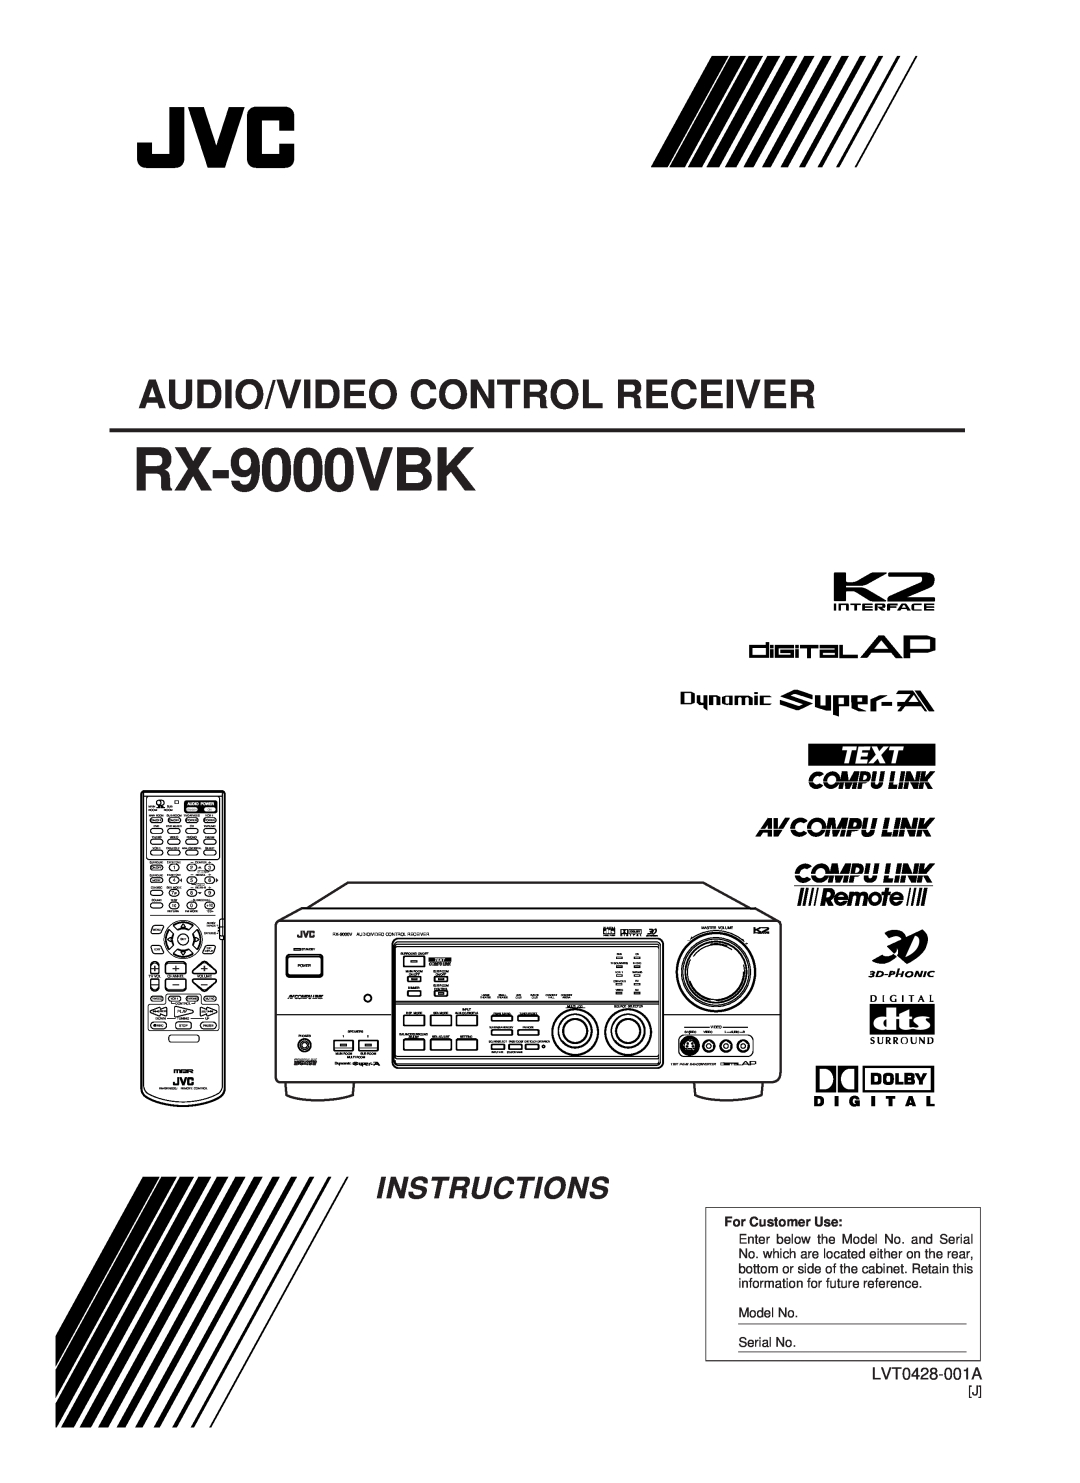 JVC RX-9000VBK manual Audio/Video Control Receiver, Instructions, D I G I T A L, For Customer Use, Model No Serial No 